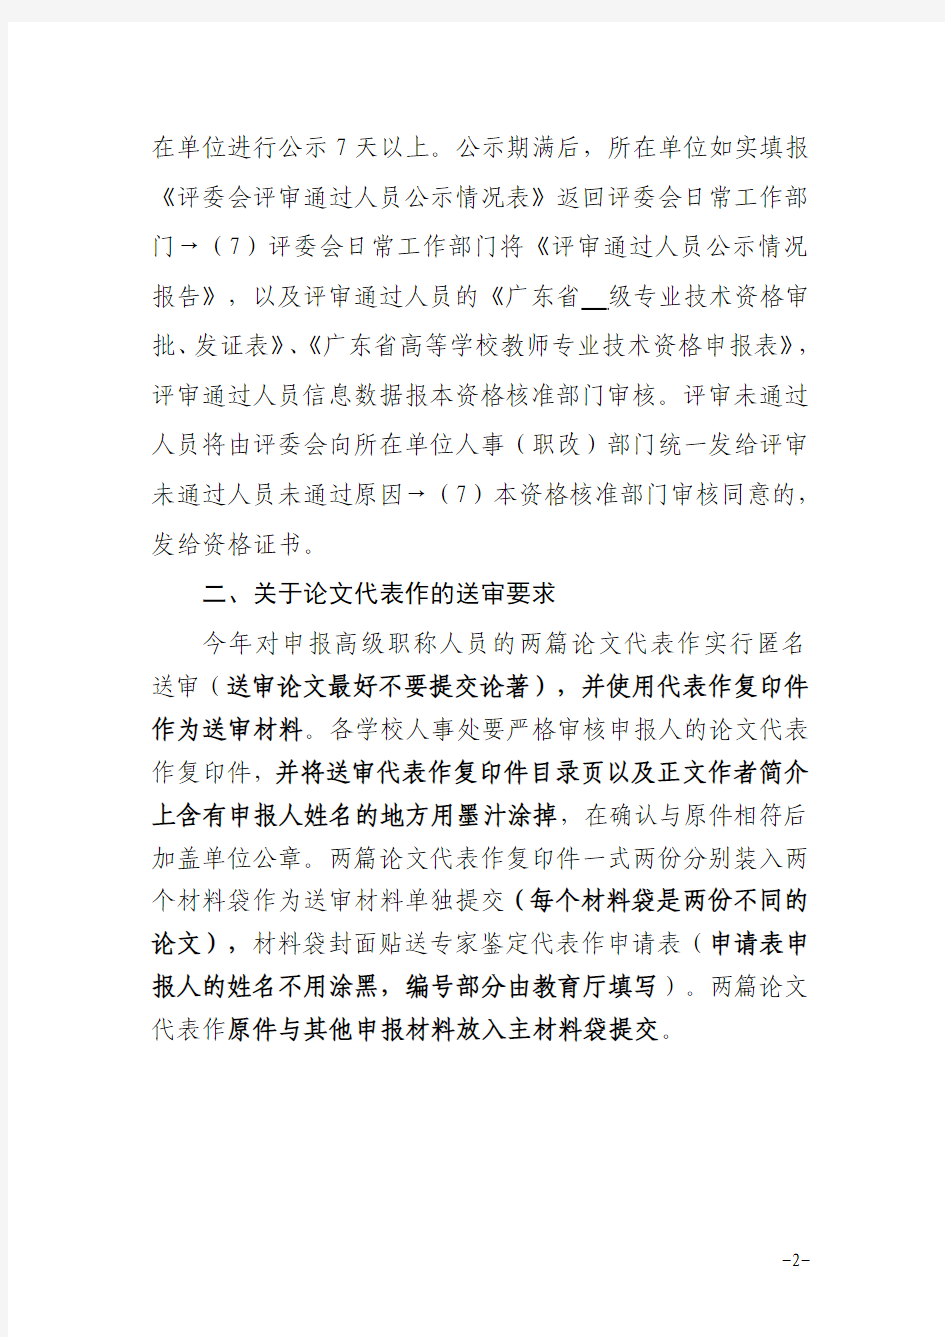 广东商学院 申报评审材料填报问题的有关说明